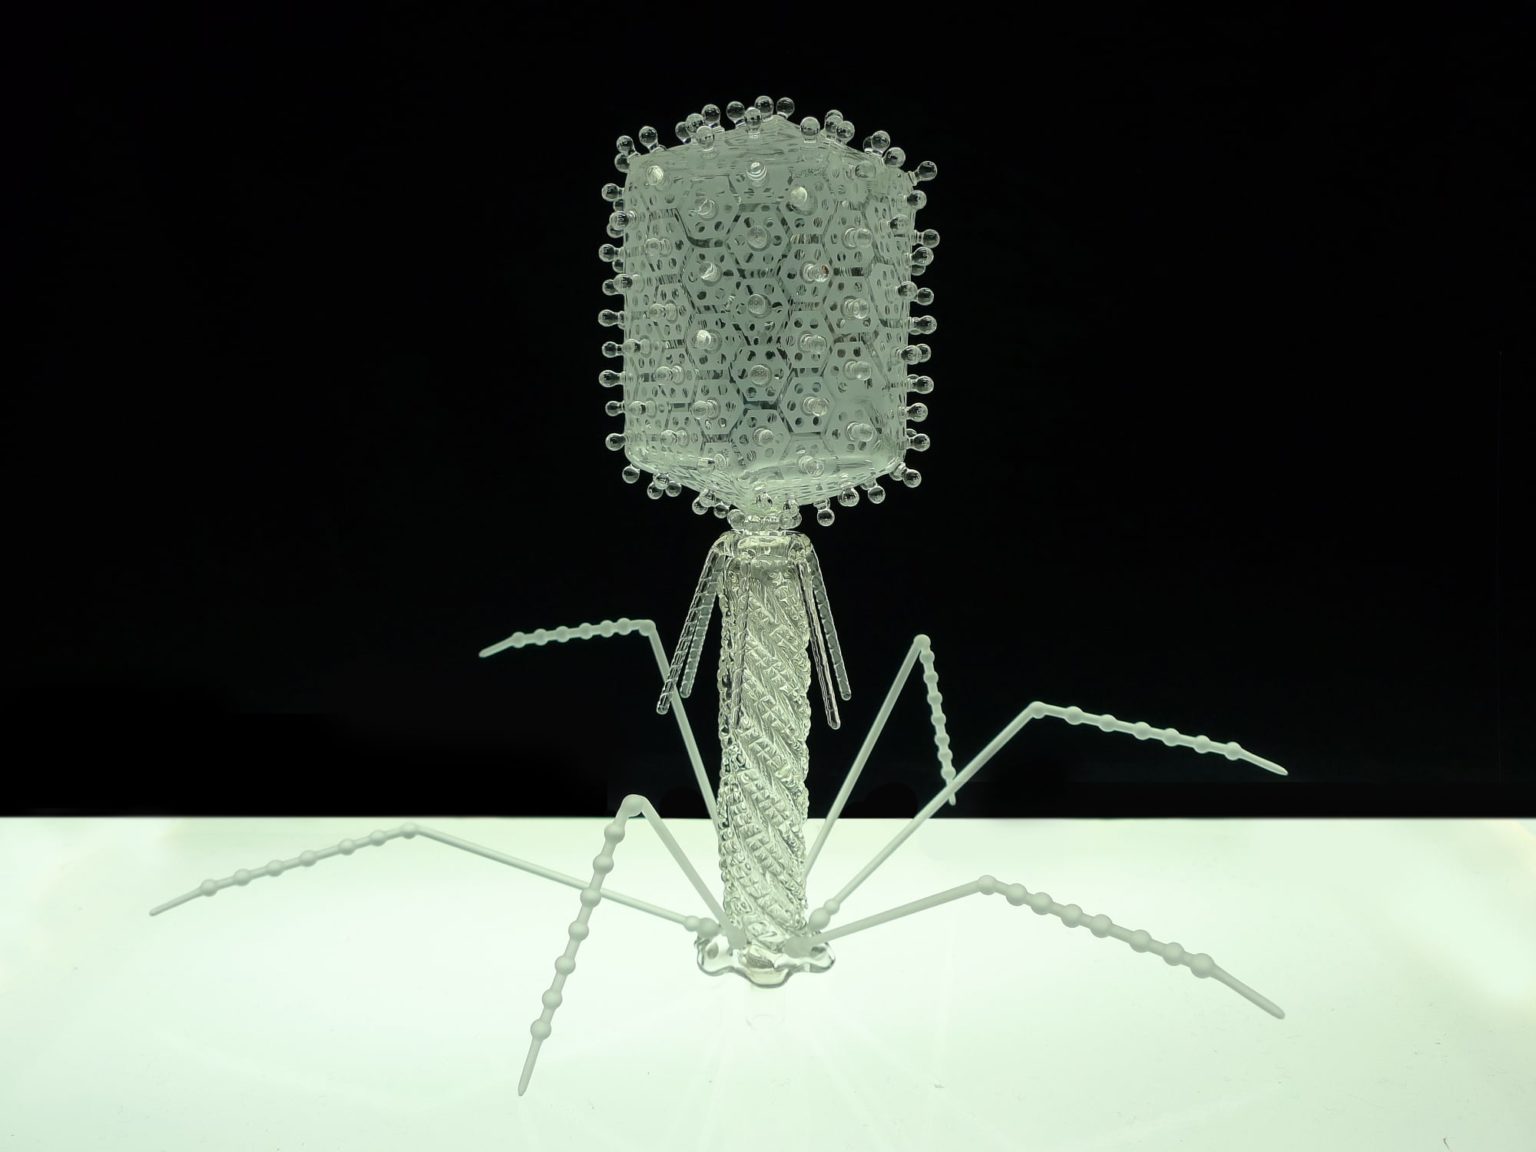 Les splendides modèles en verre de micro-organismes et virus, signés Luke Jerram 